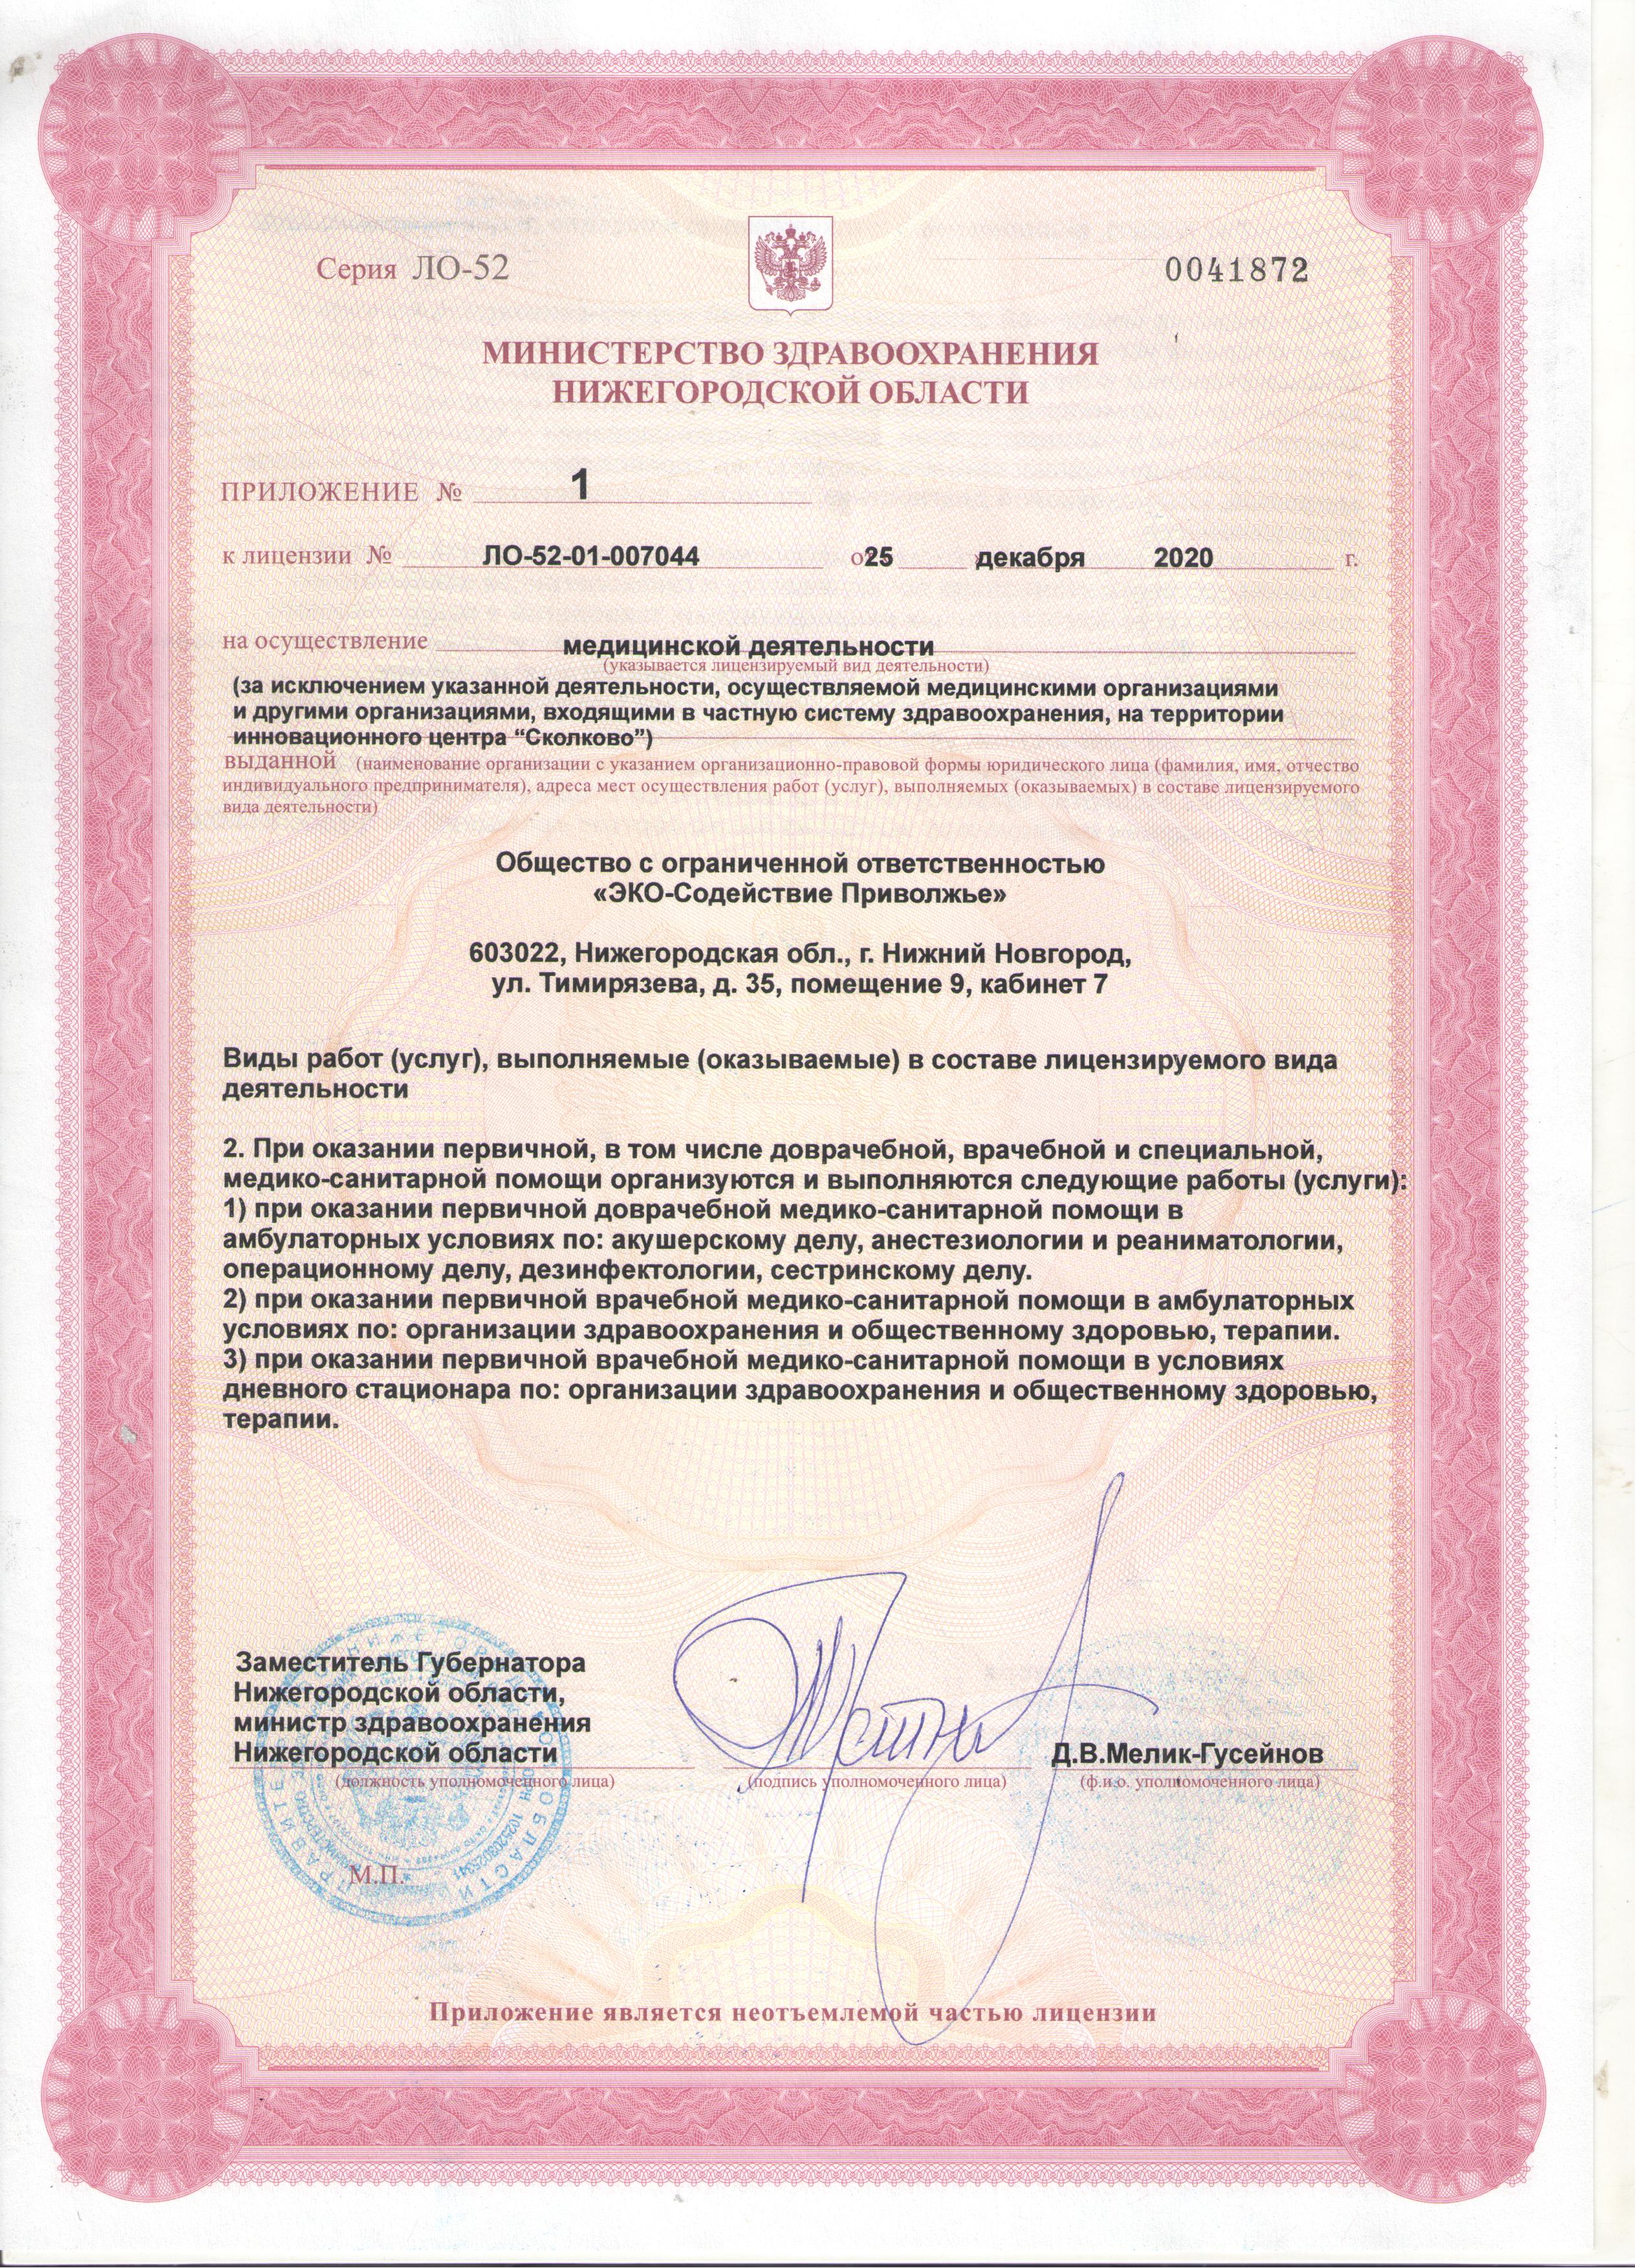 ЭКО-СОДЕЙСТВИЕ Москва лицензия